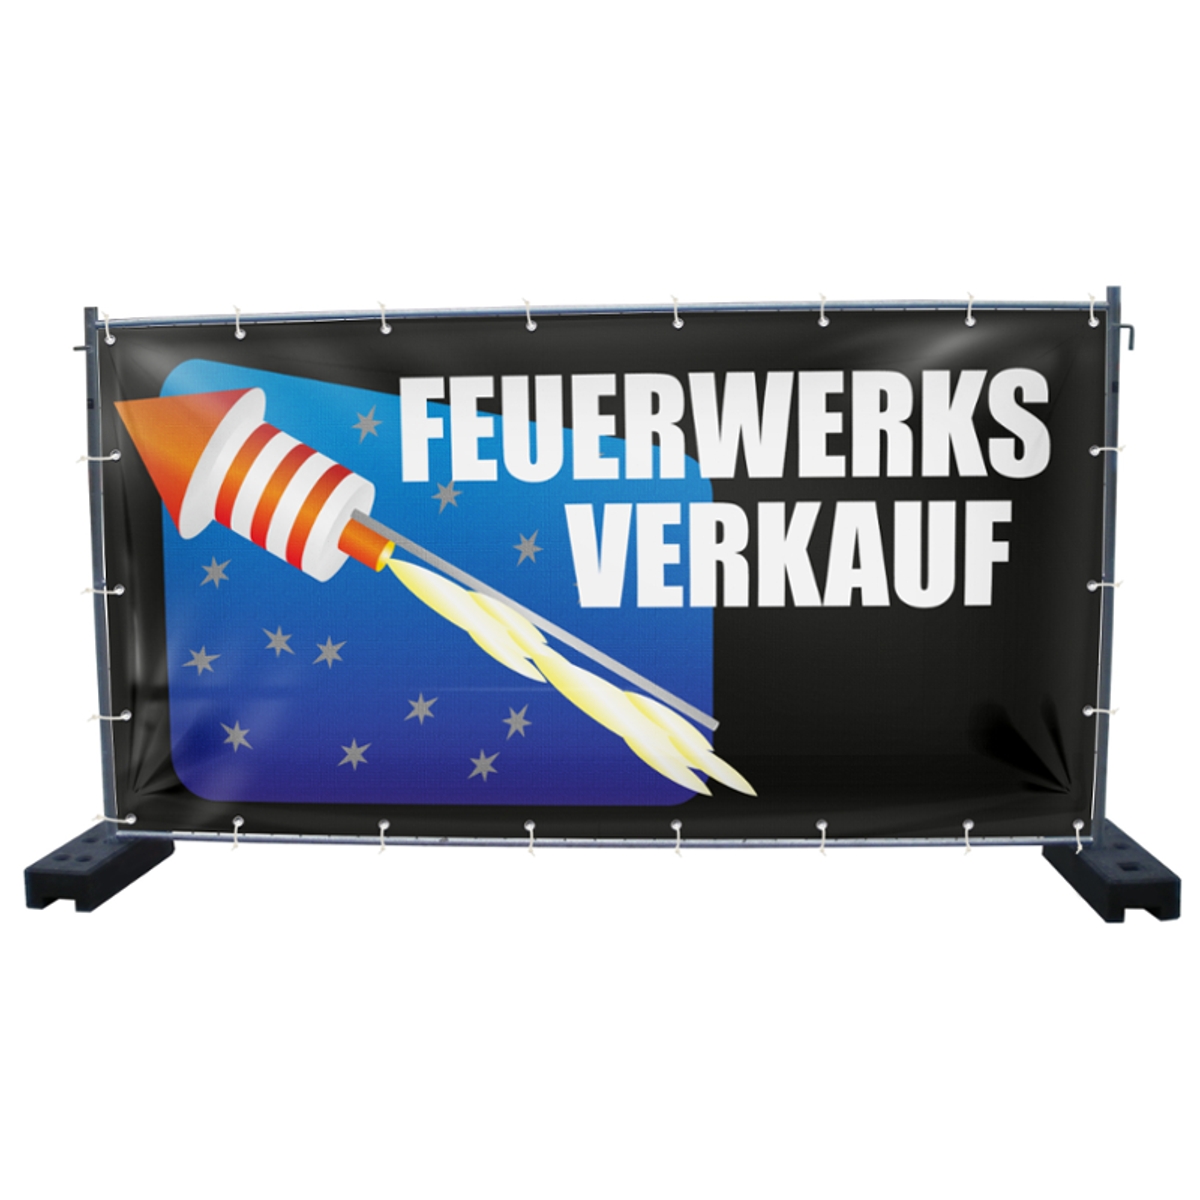 340 x 173 cm | Feuerwerksverkauf Bauzaunbanner, M10